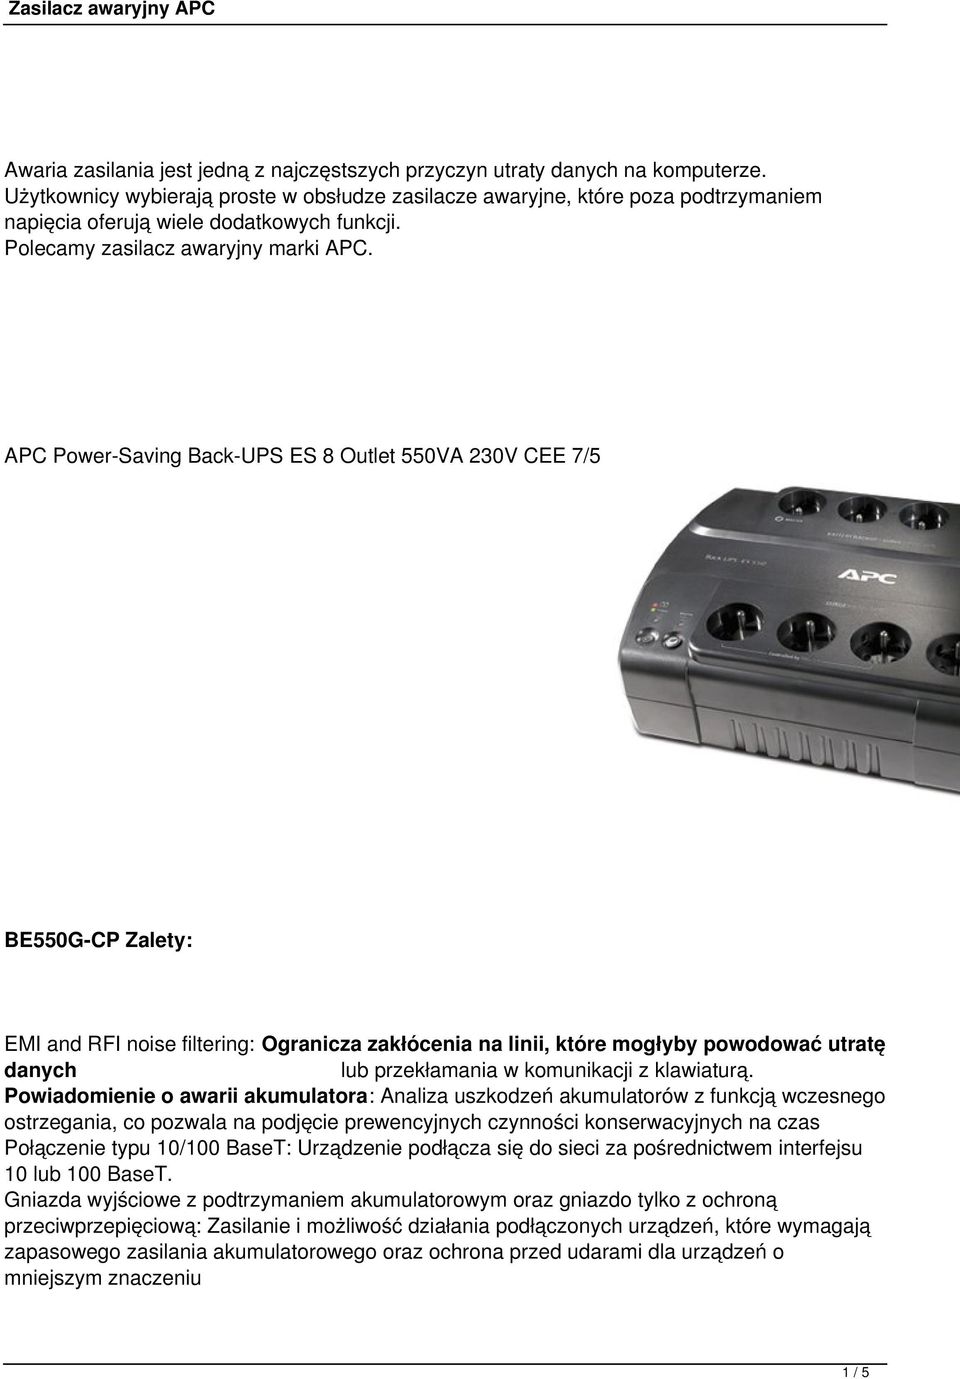 APC Power-Saving Back-UPS ES 8 Outlet 550VA 230V CEE 7/5 BE550G-CP Zalety: EMI and RFI noise filtering: Ogranicza zakłócenia na linii, które mogłyby powodować utratę danych lub przekłamania w